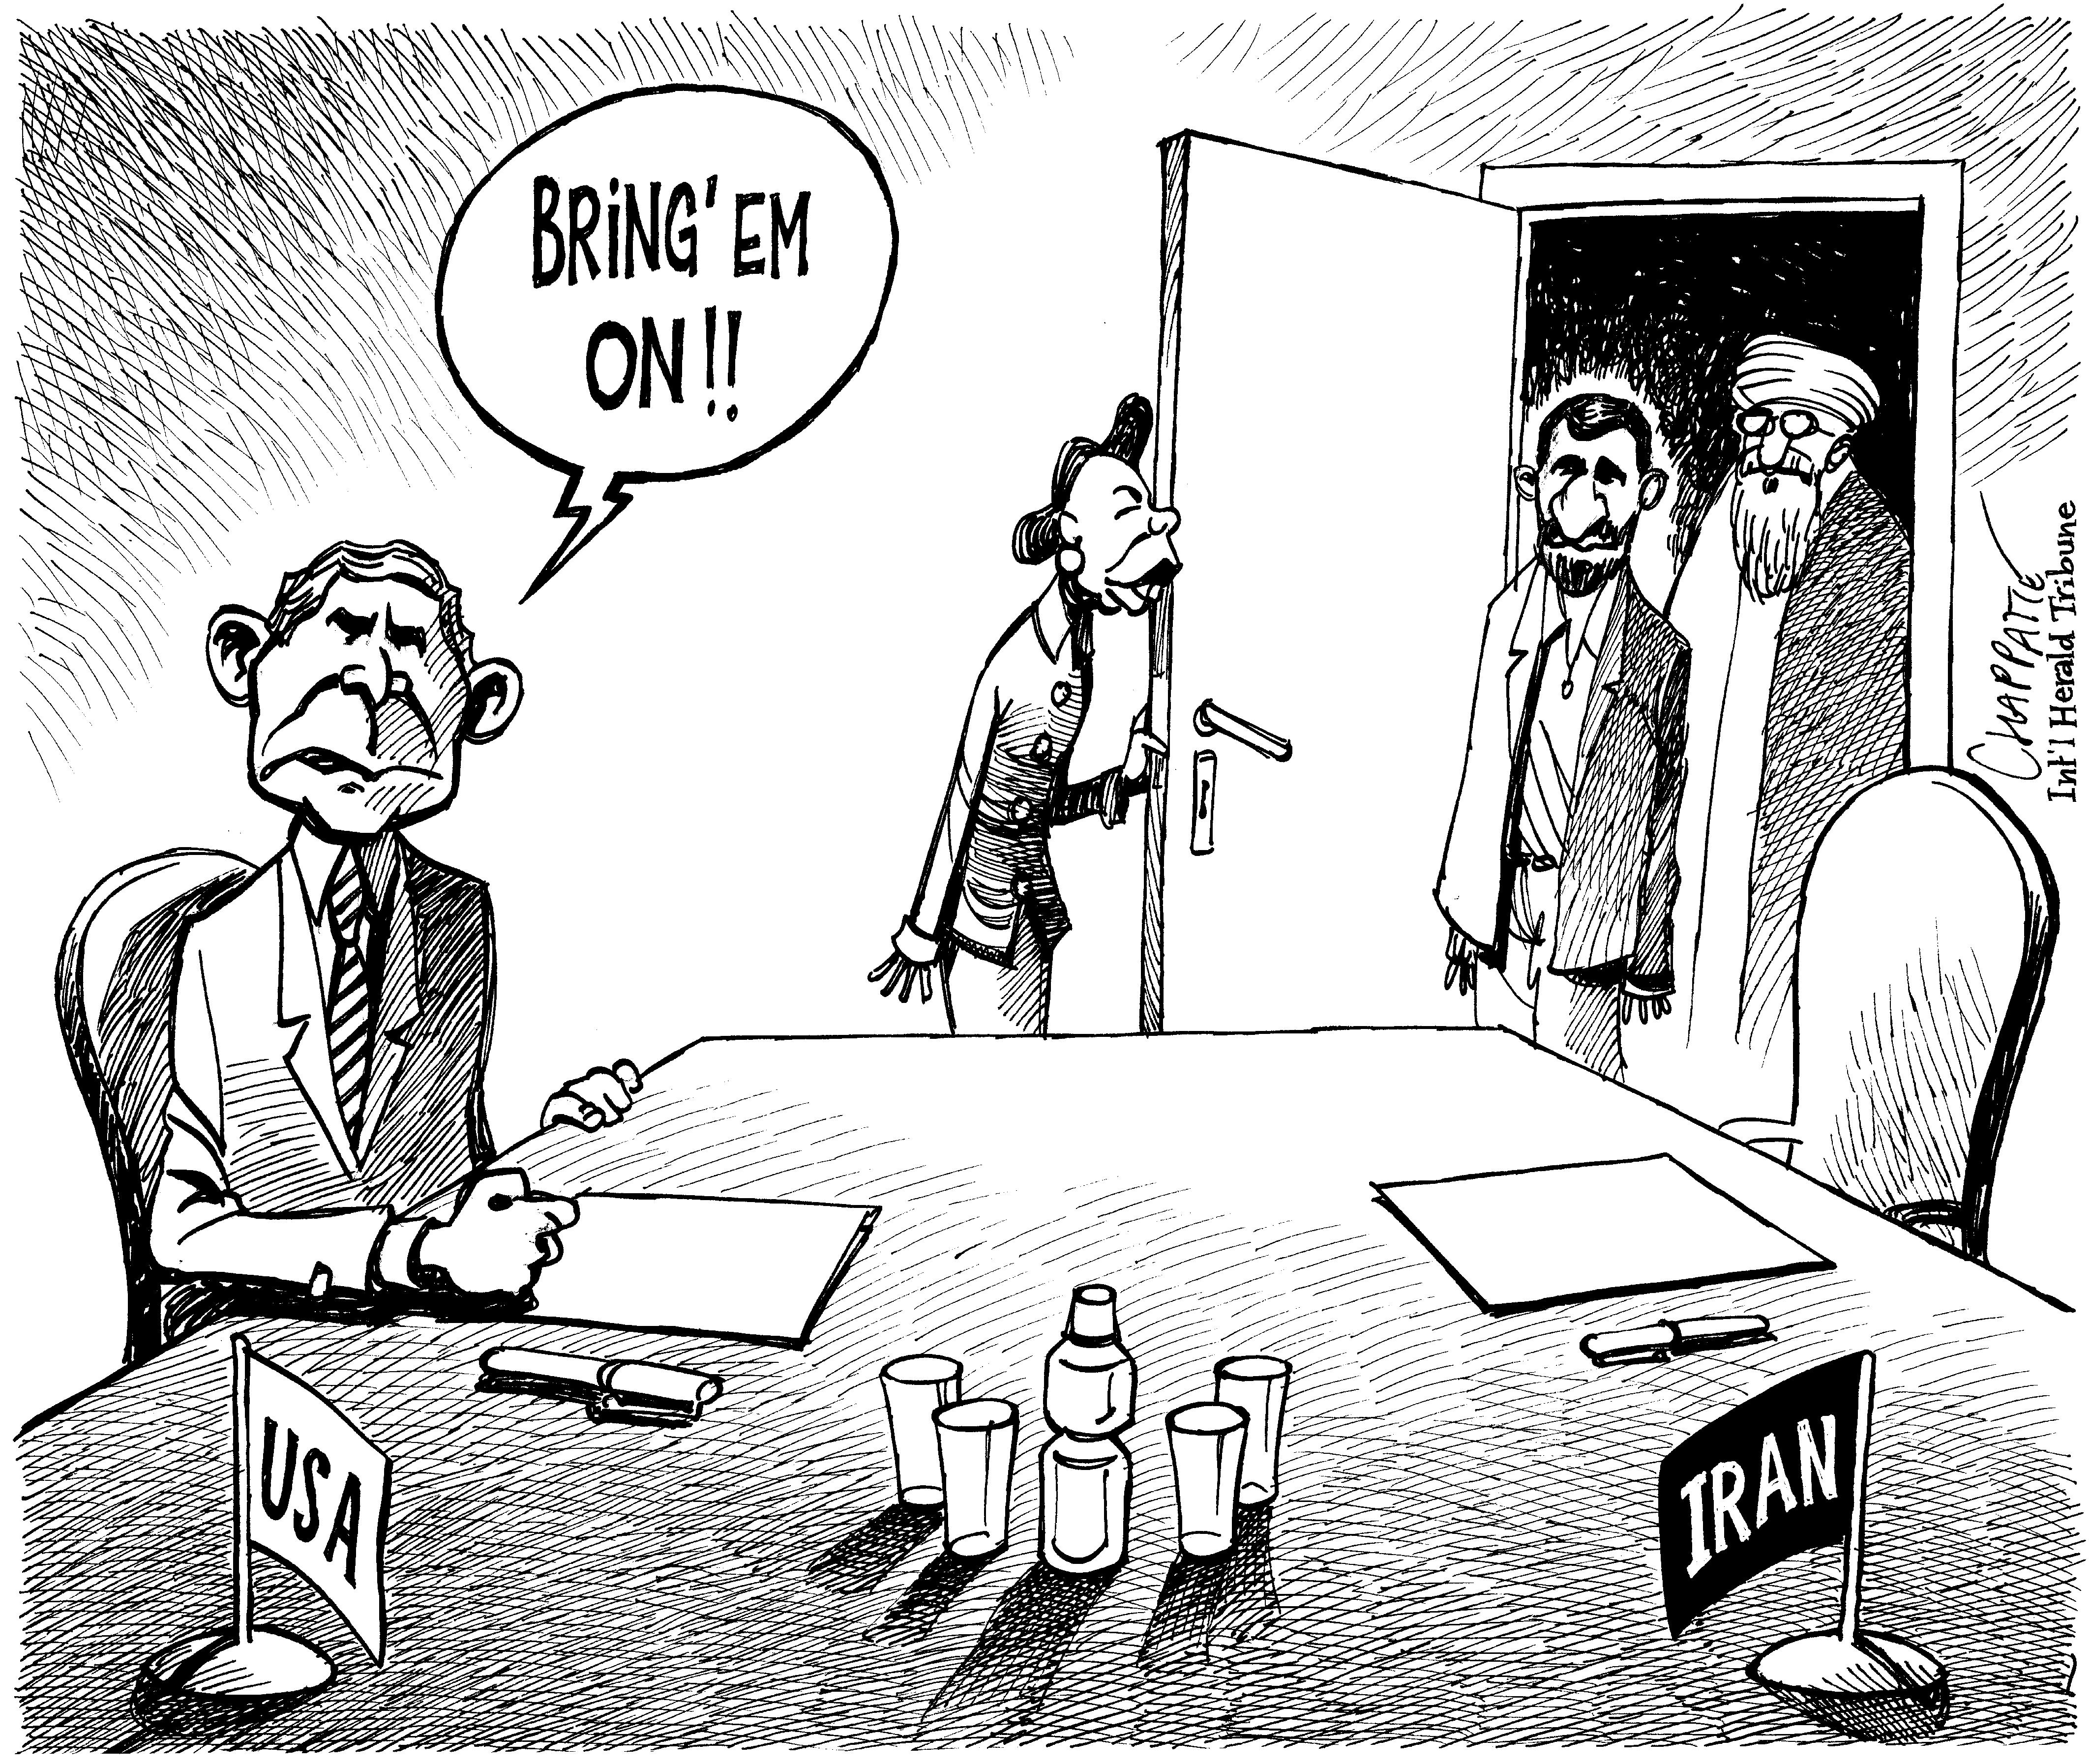 U.S. Ready To Talk To Iran